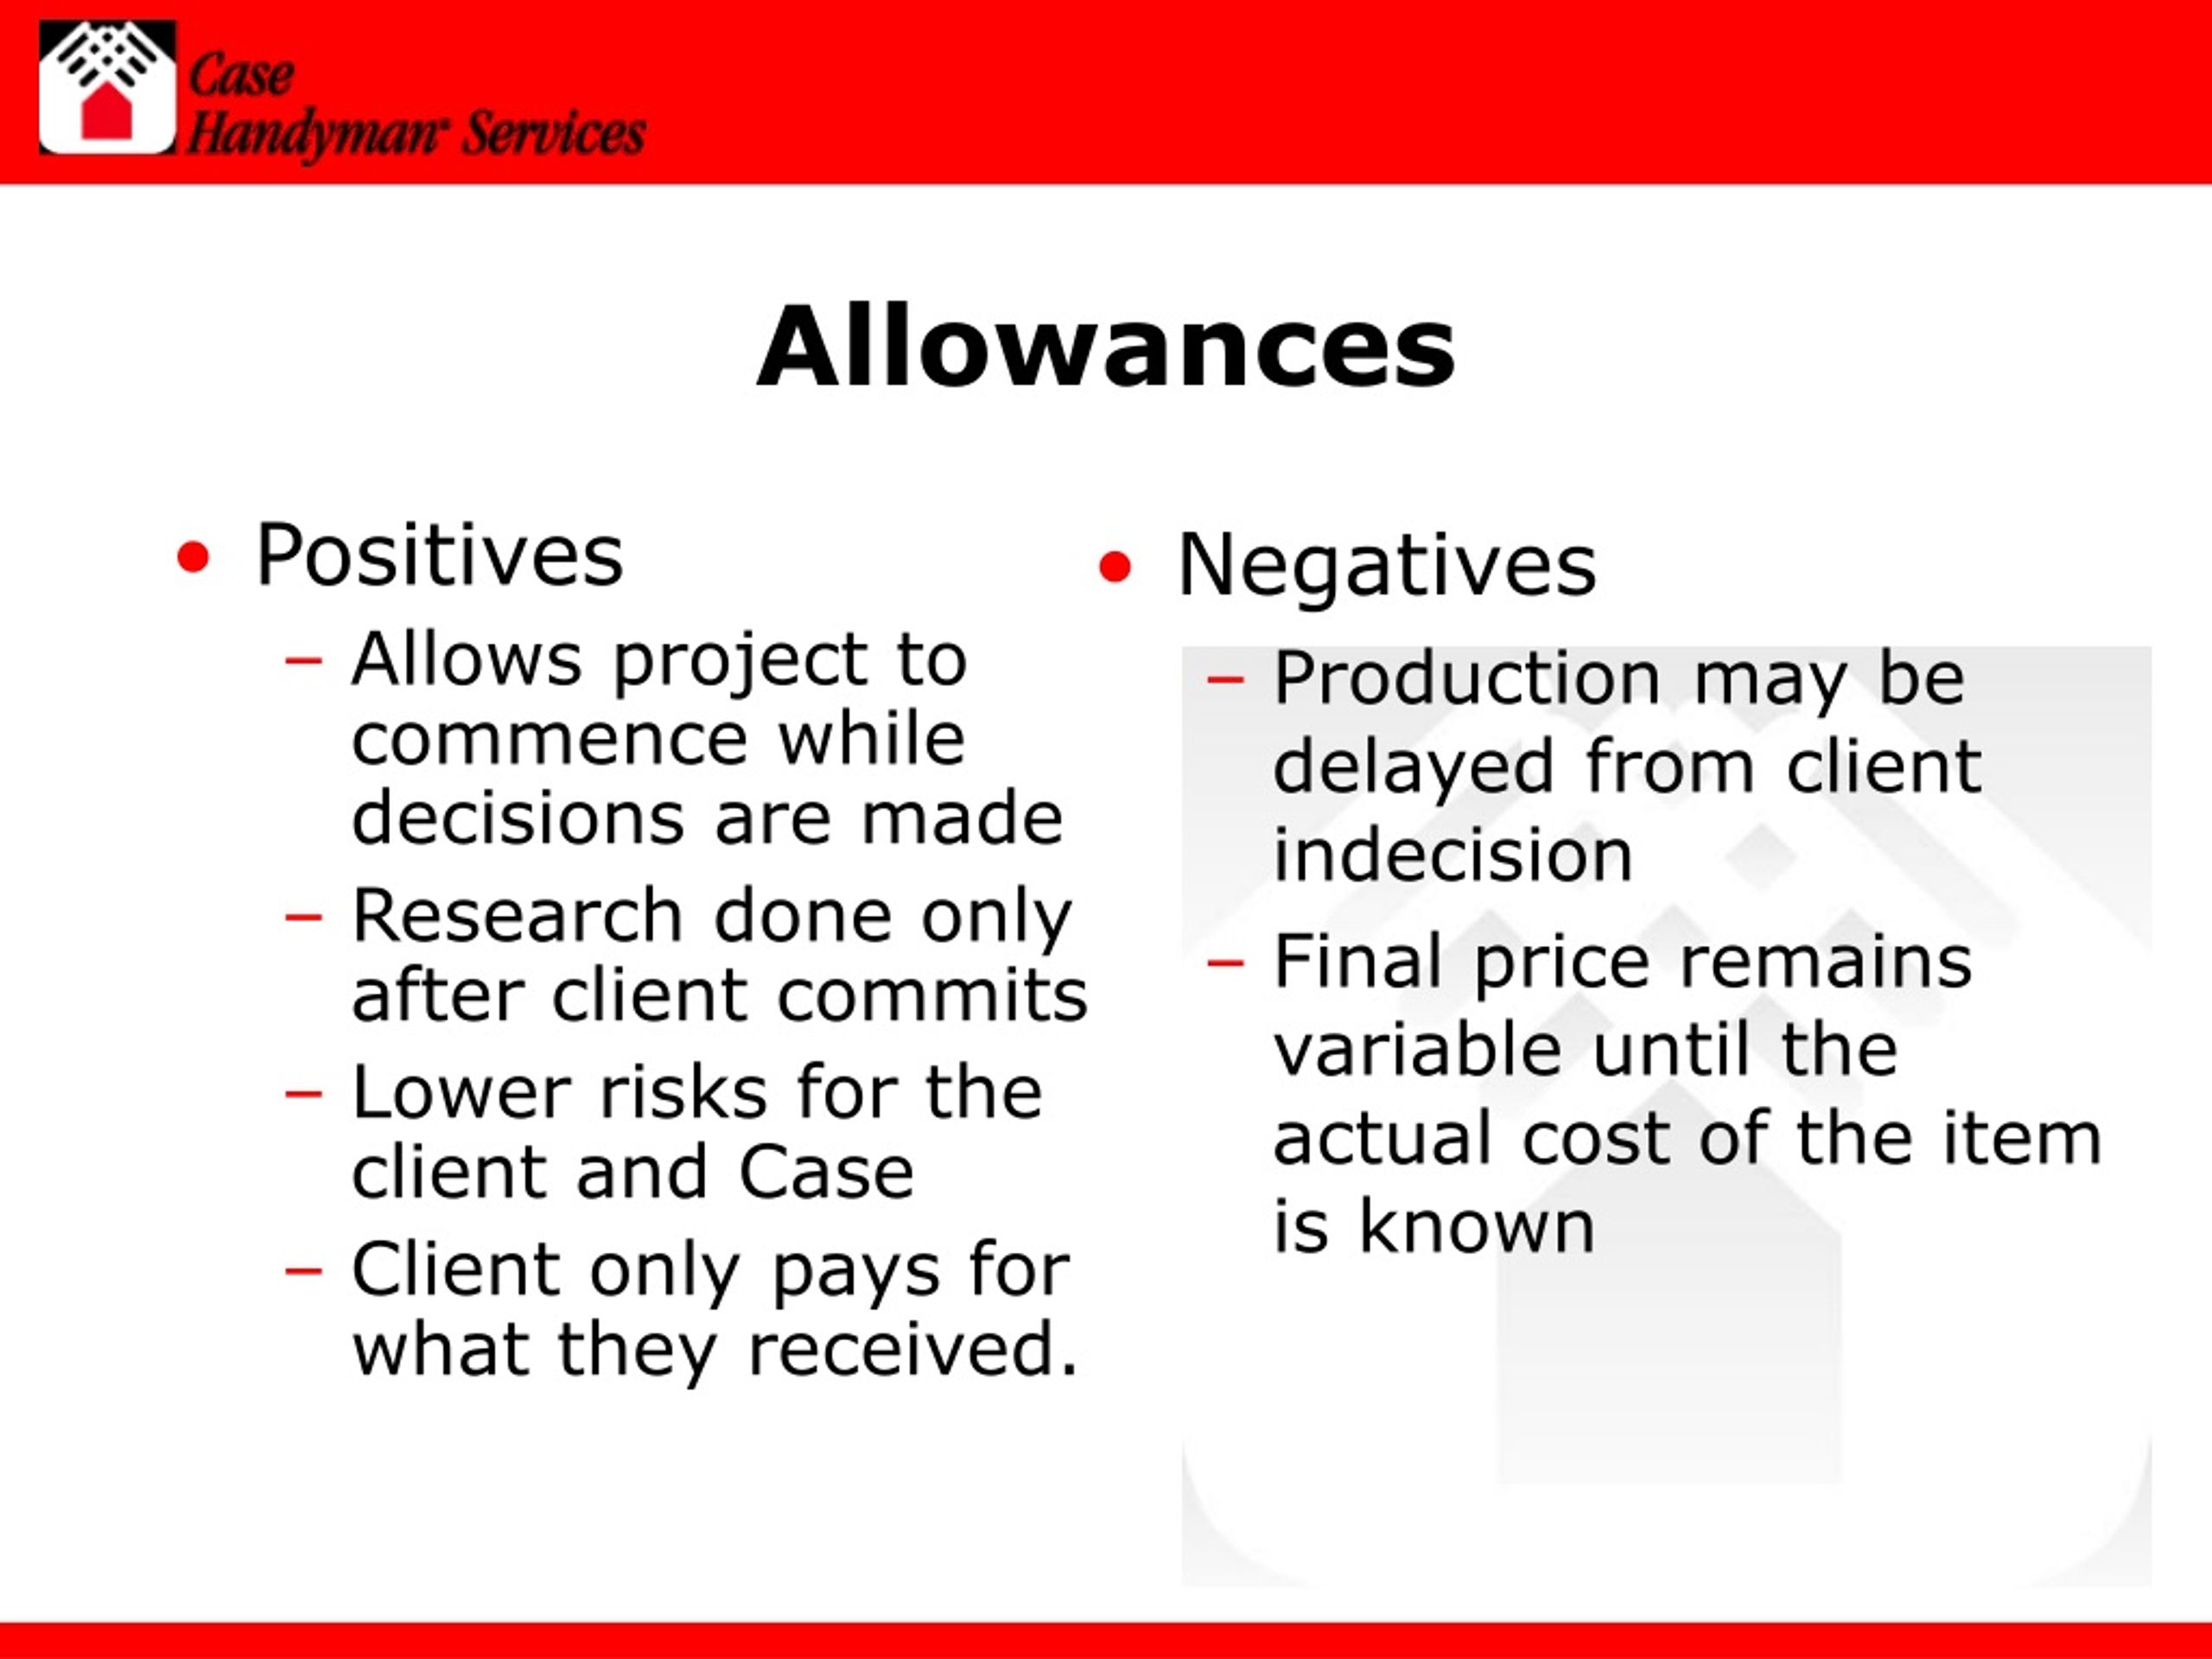 assignment allowance definition